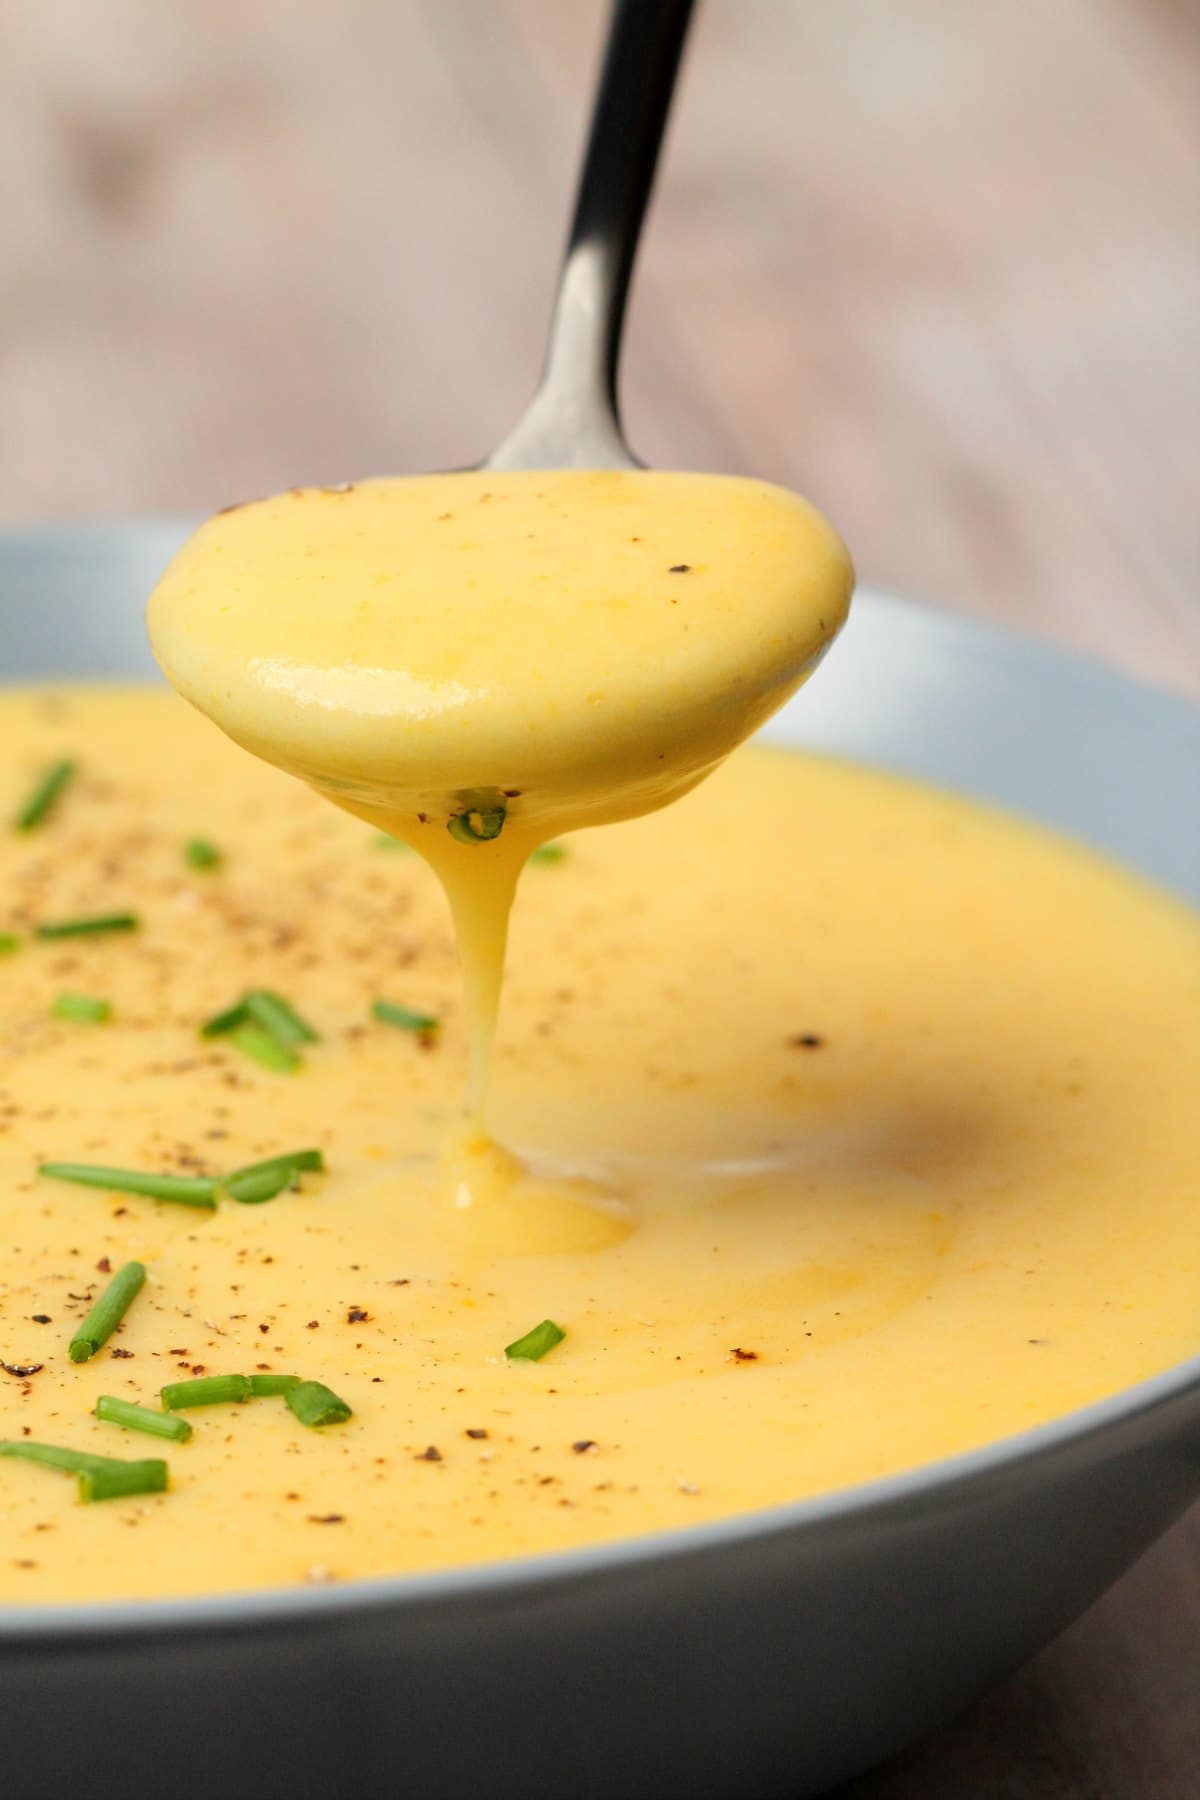 Creamy Vegan Potato Soup